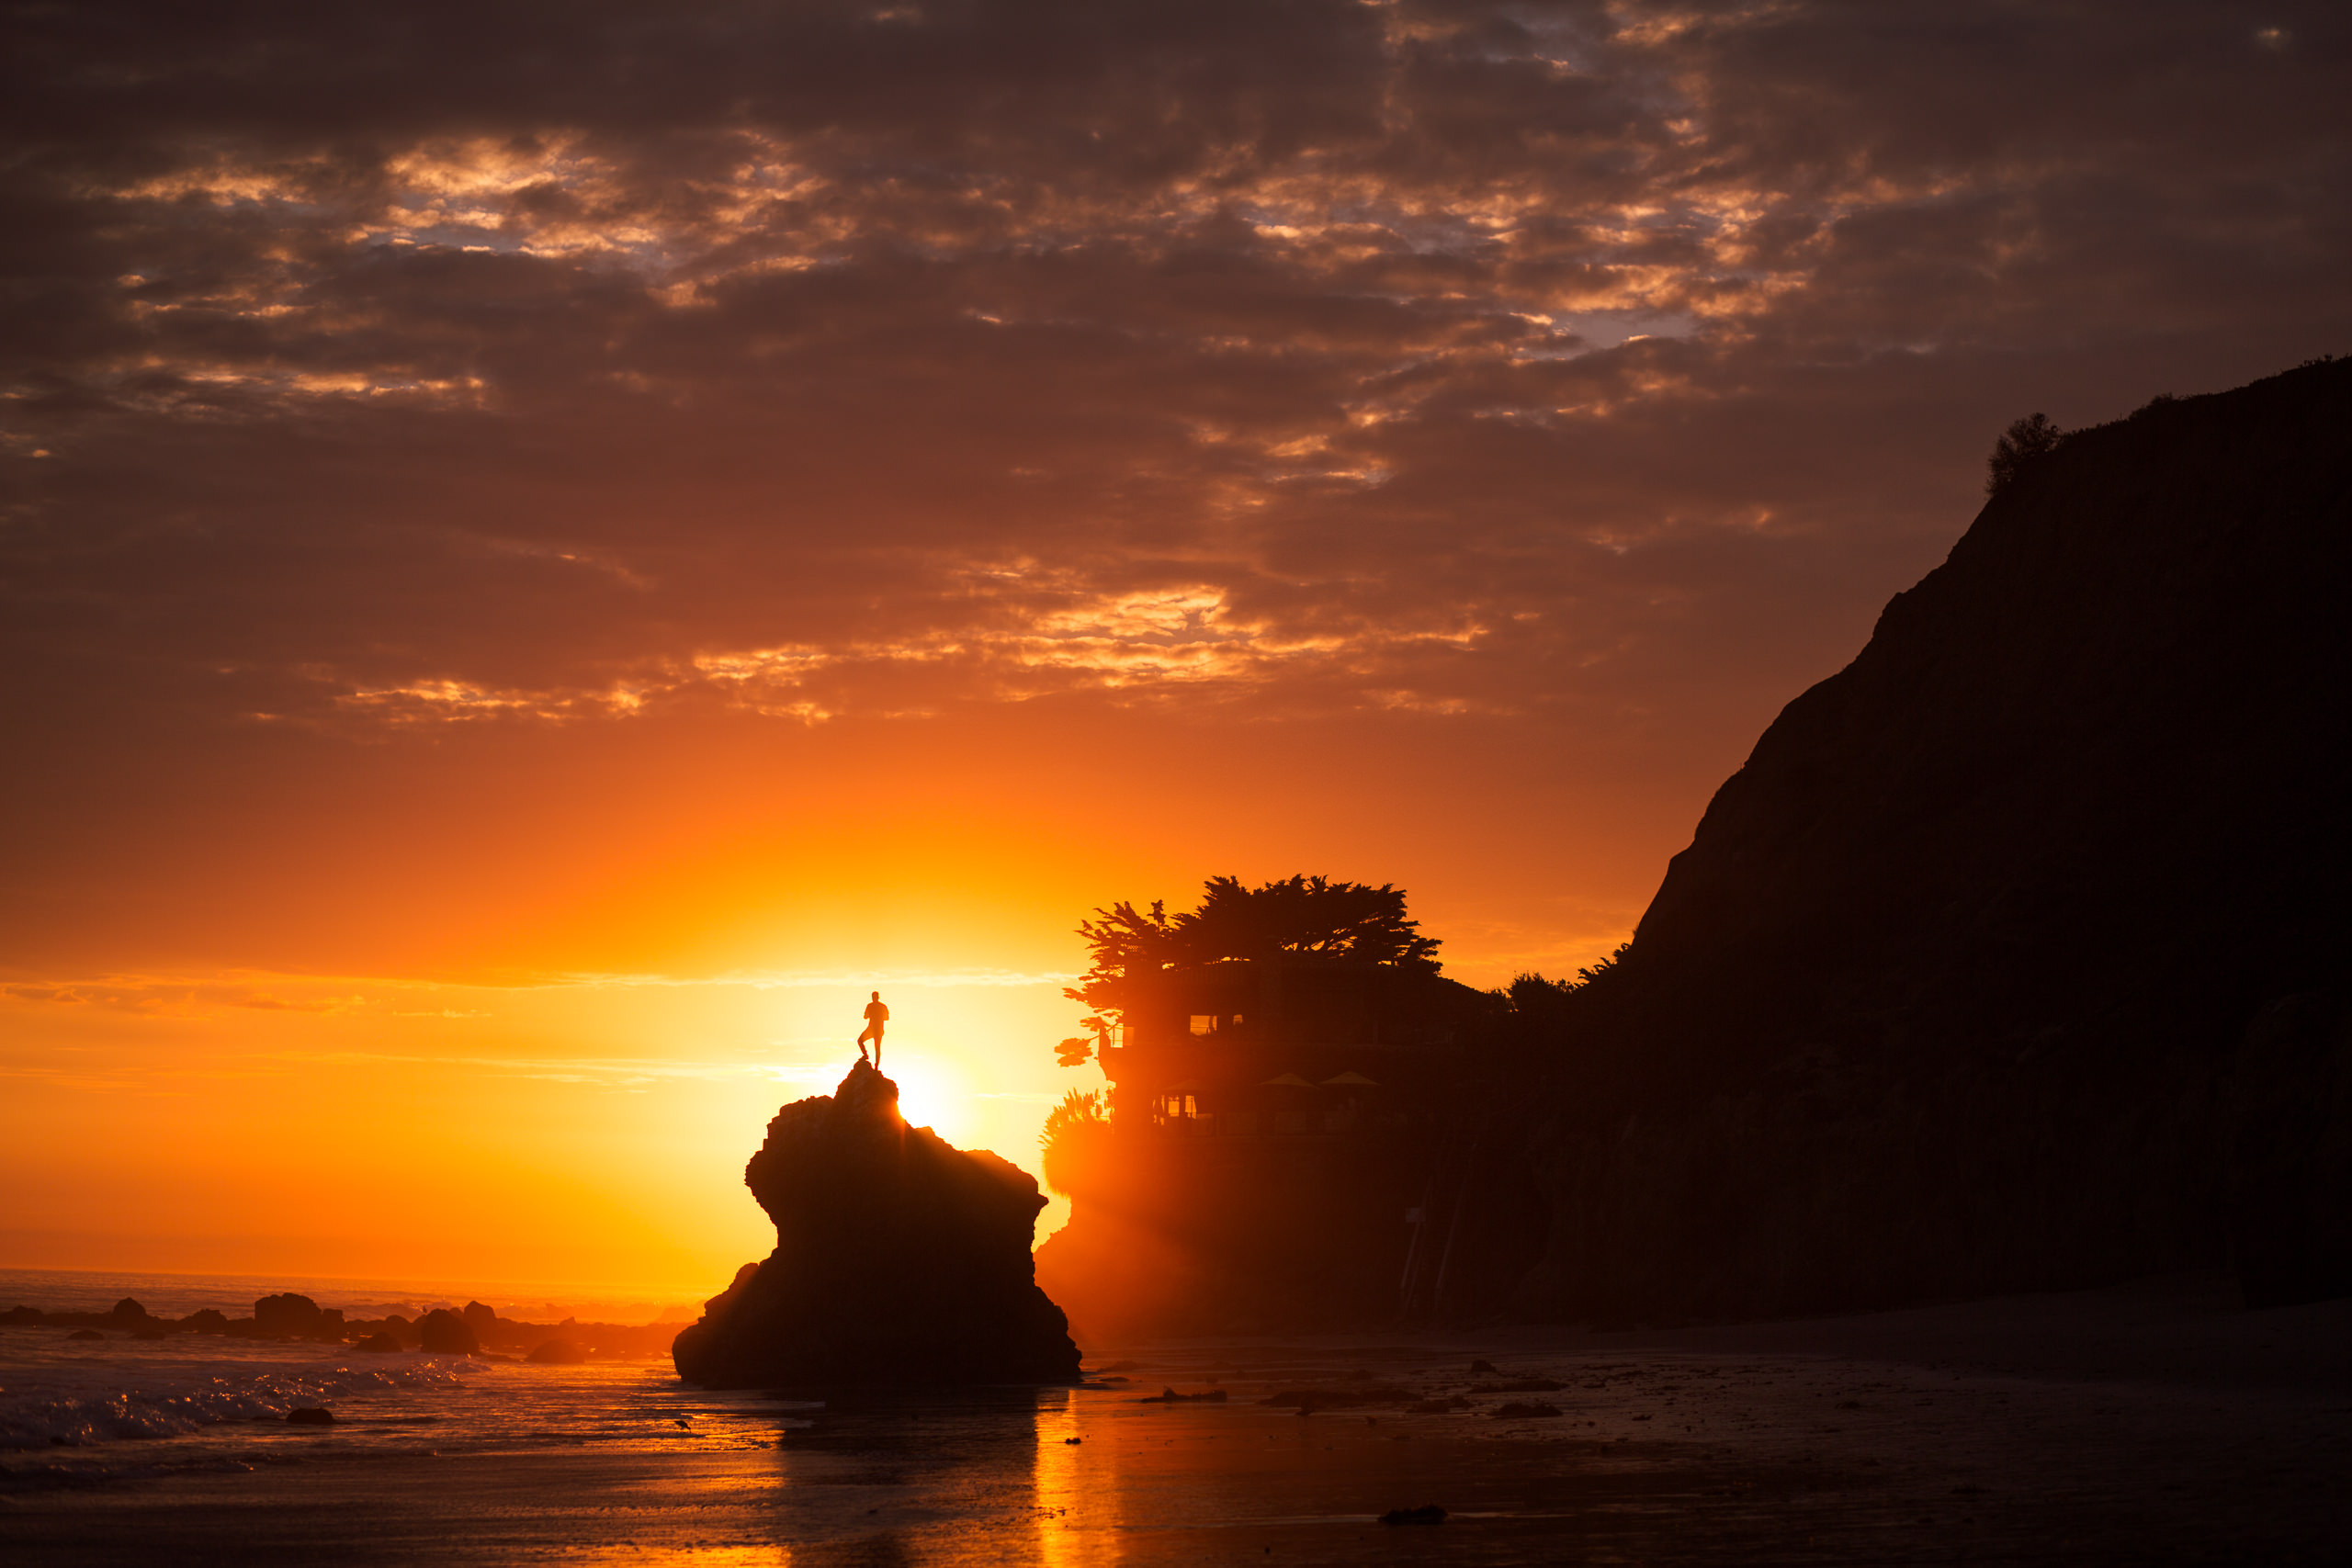 malibu beach sunset silhouette kingston